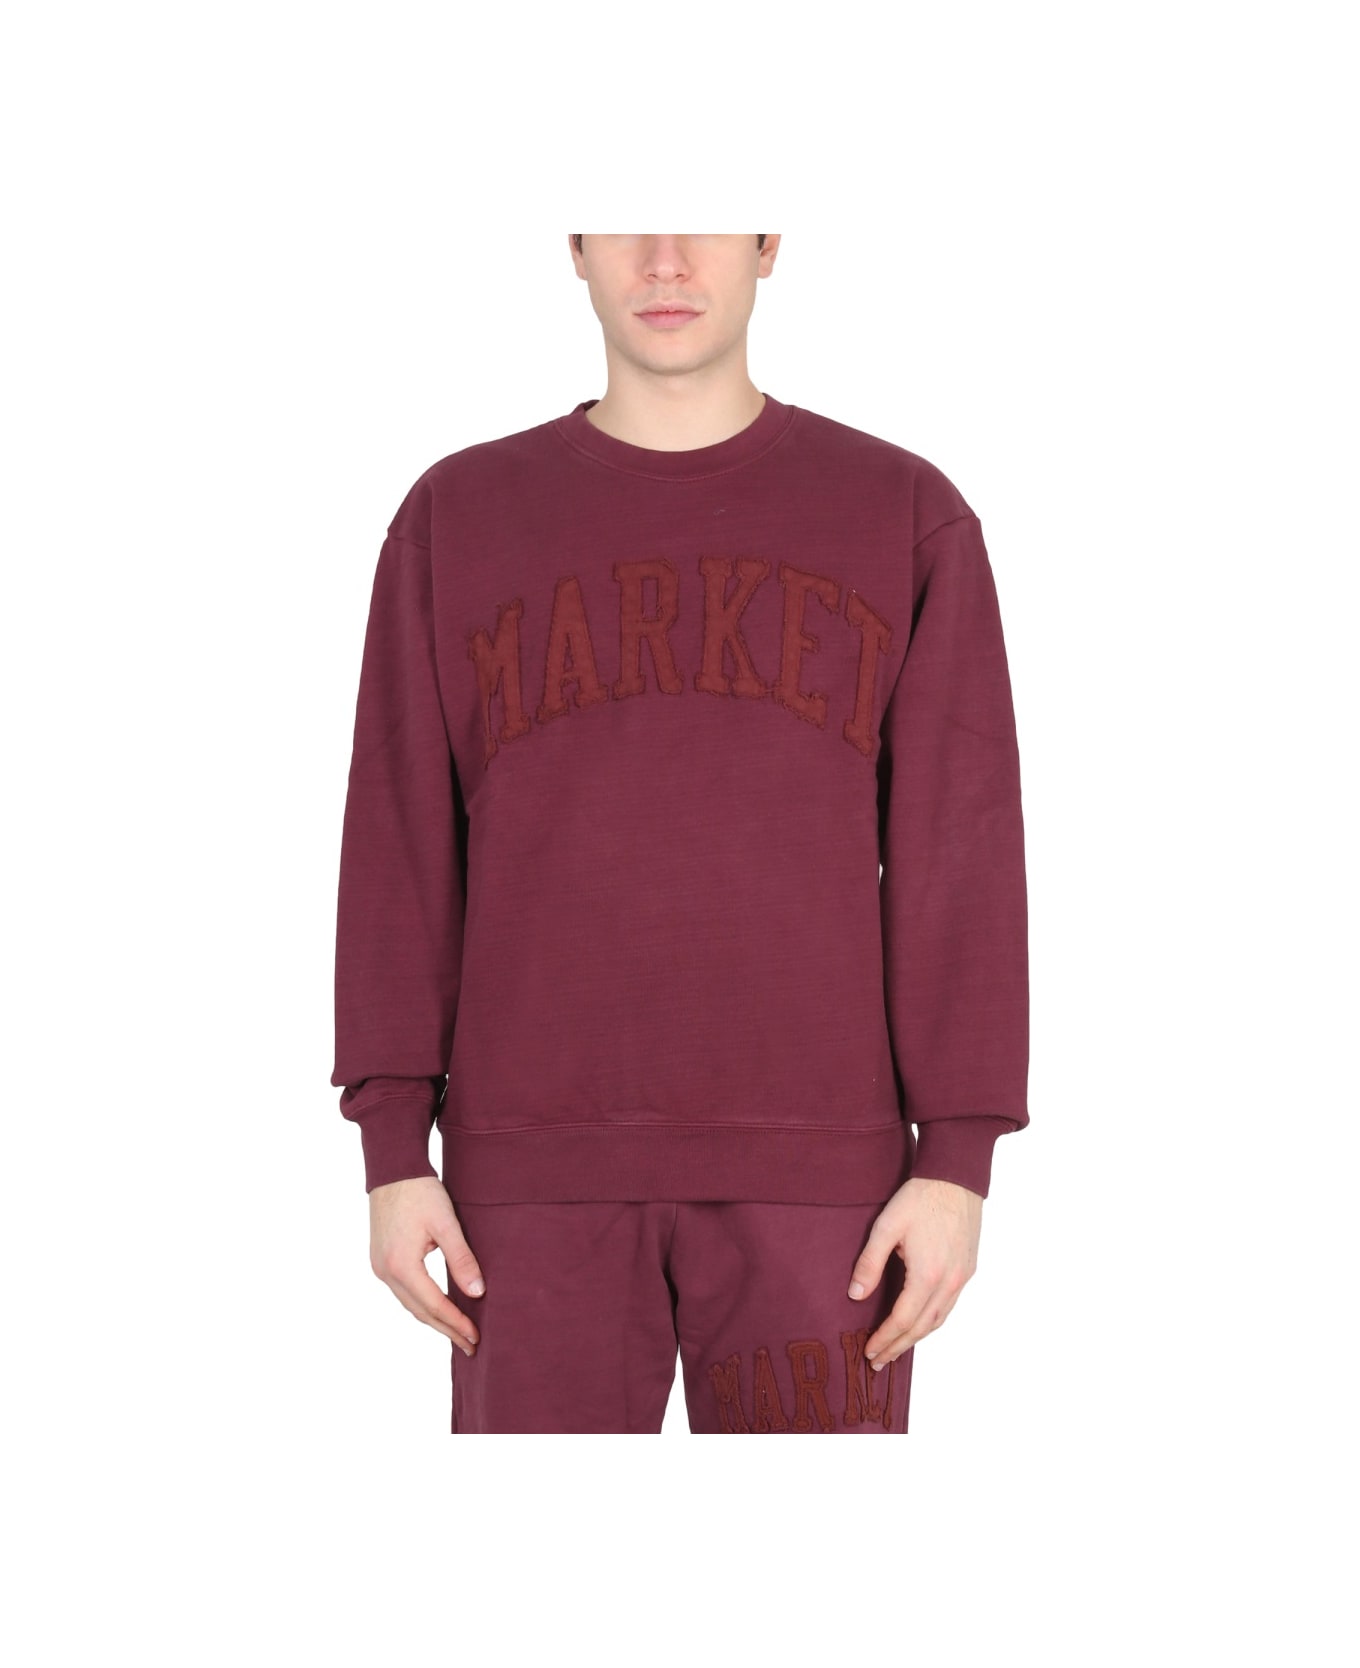 Market Vintage Wash Sweatshirt - BORDEAUX